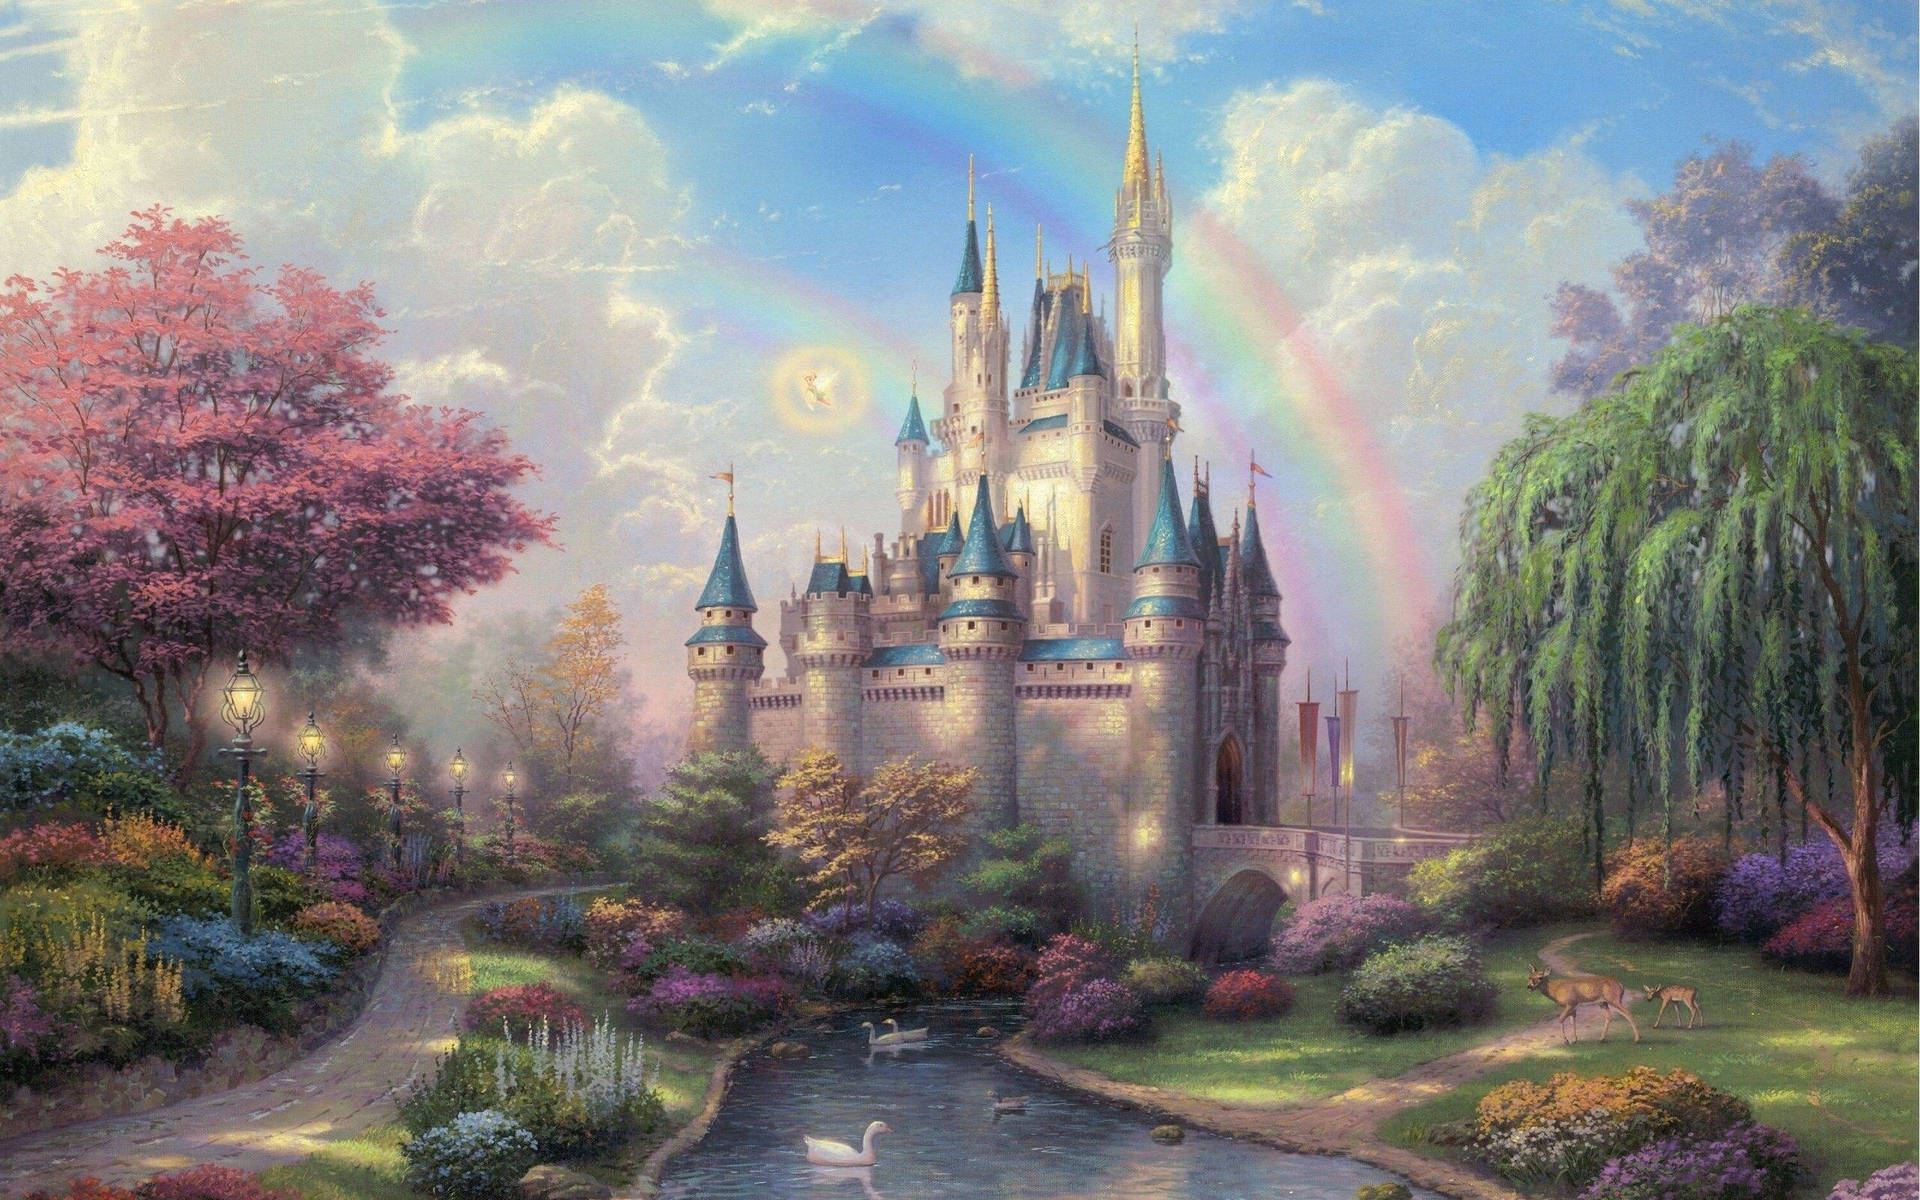 Fairytale-like Disney Castle Wallpaper